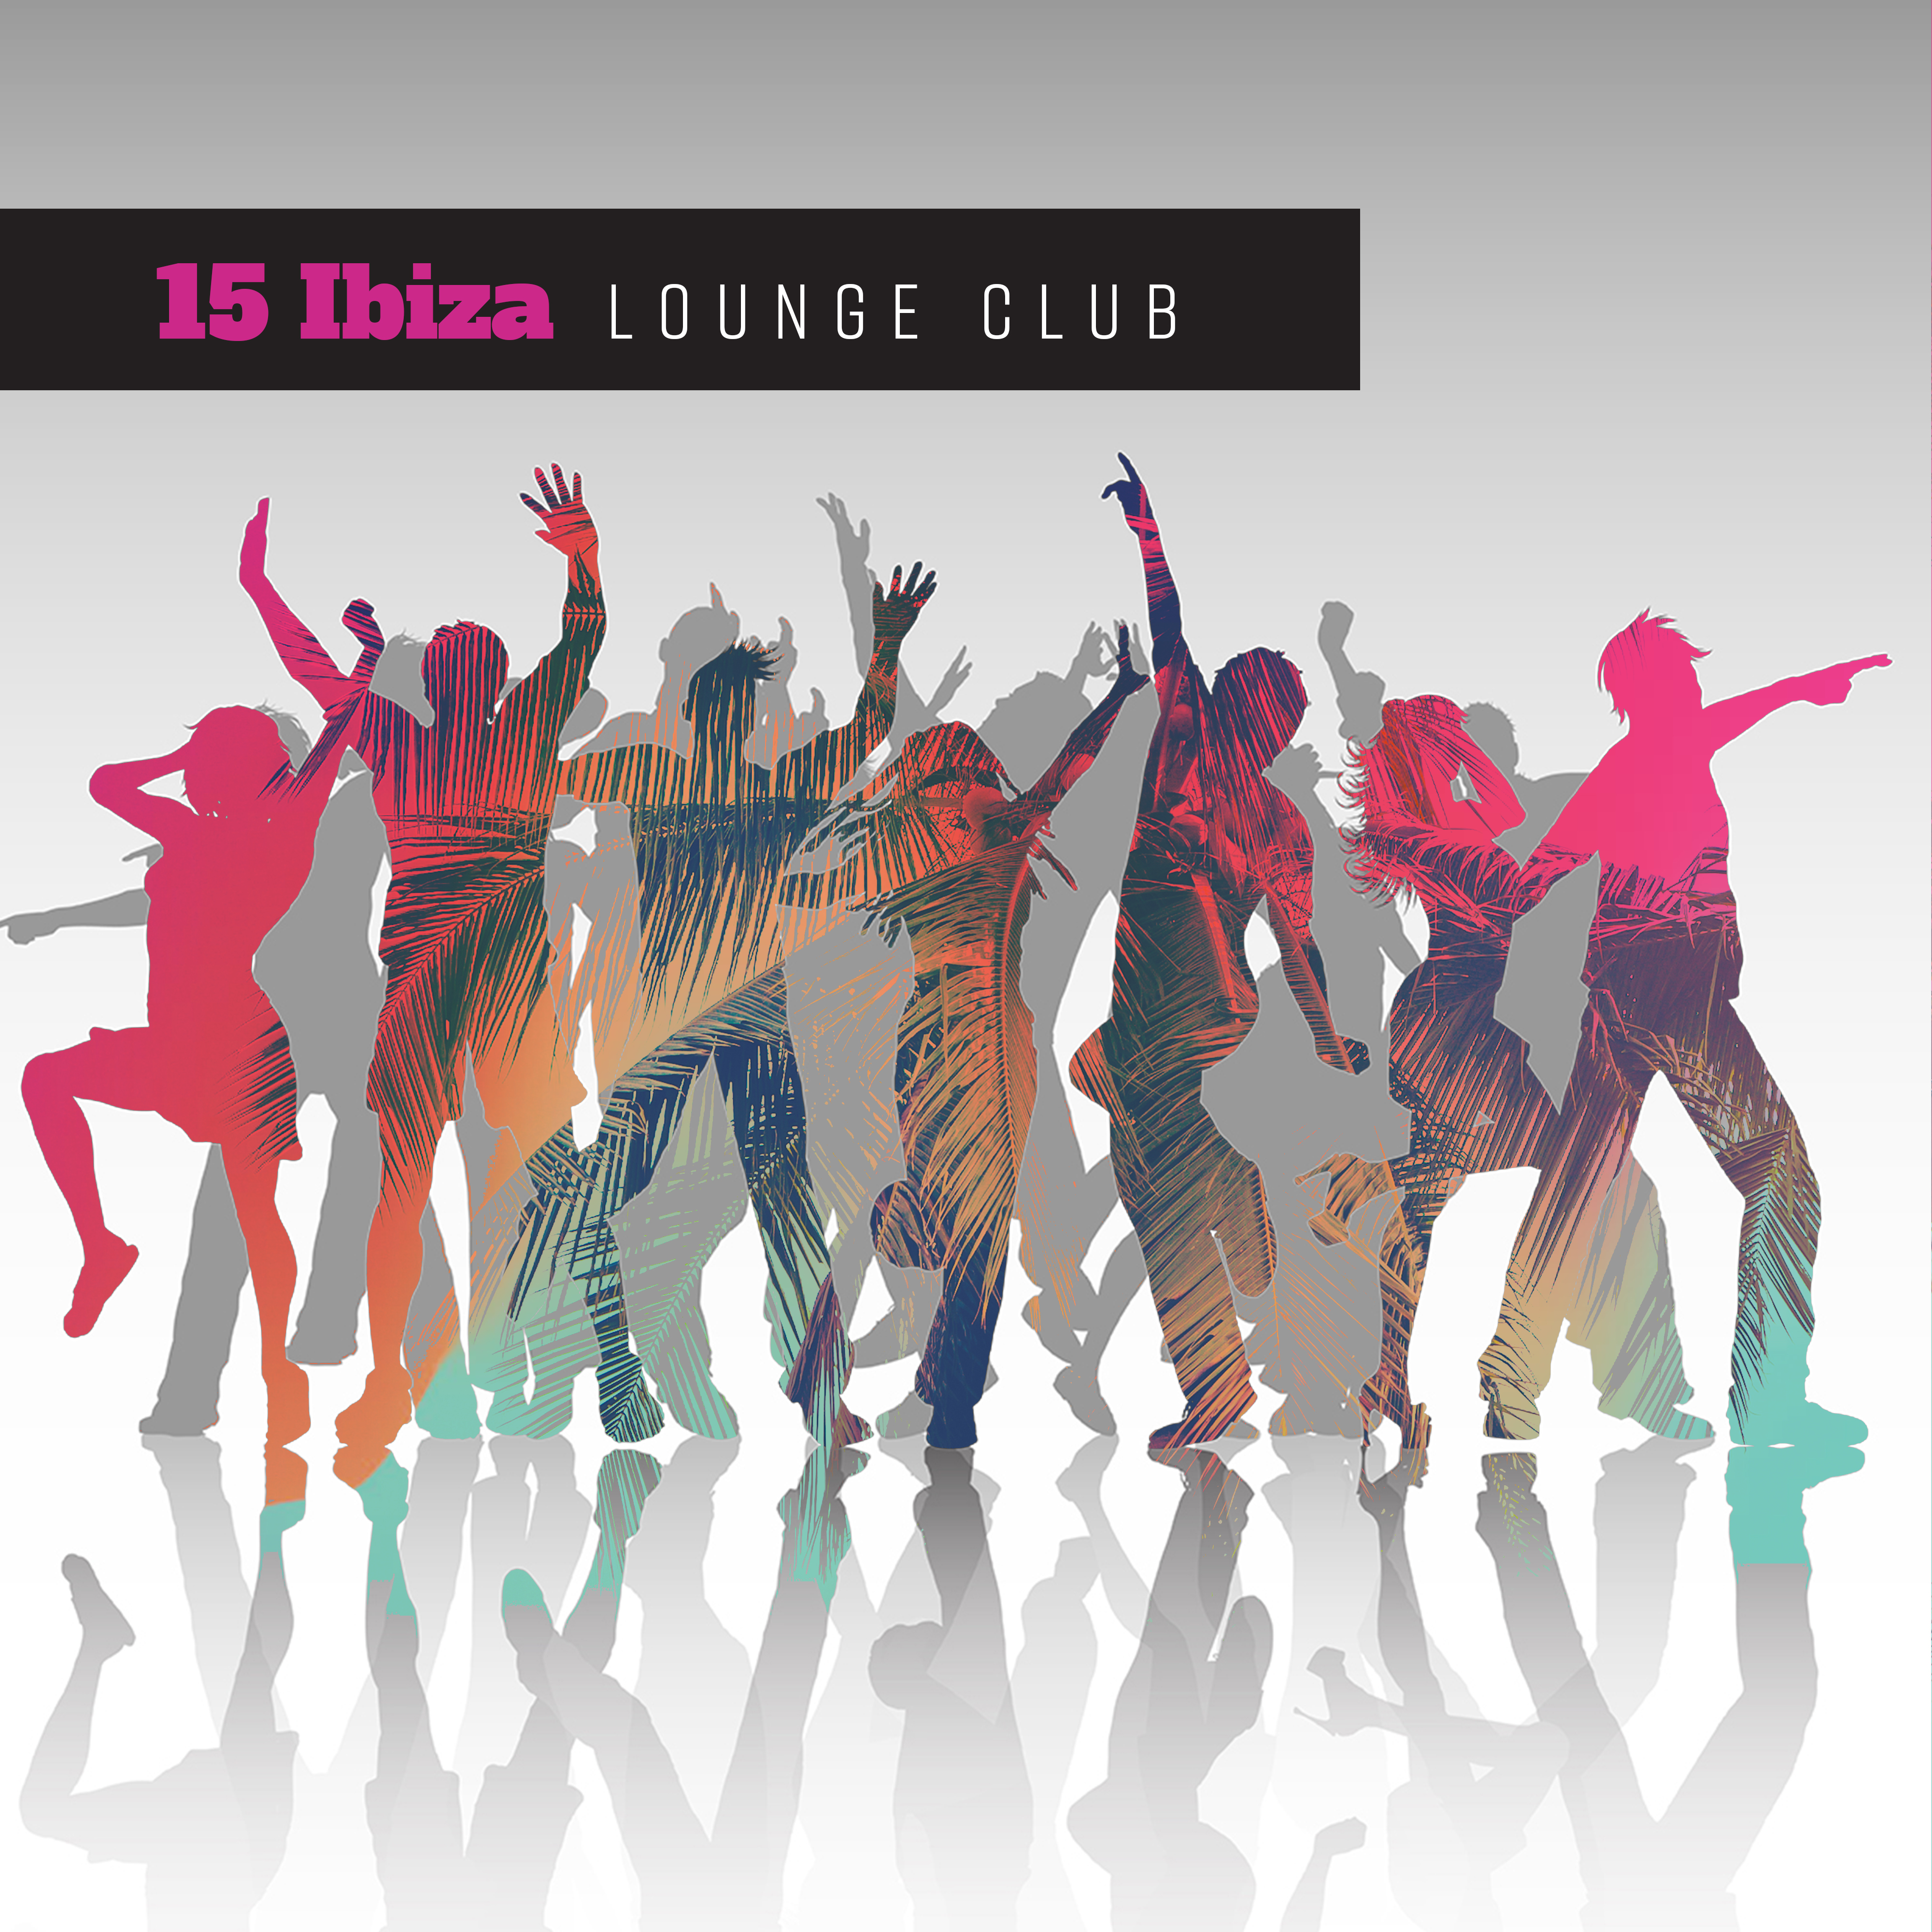 15 Ibiza Lounge Club